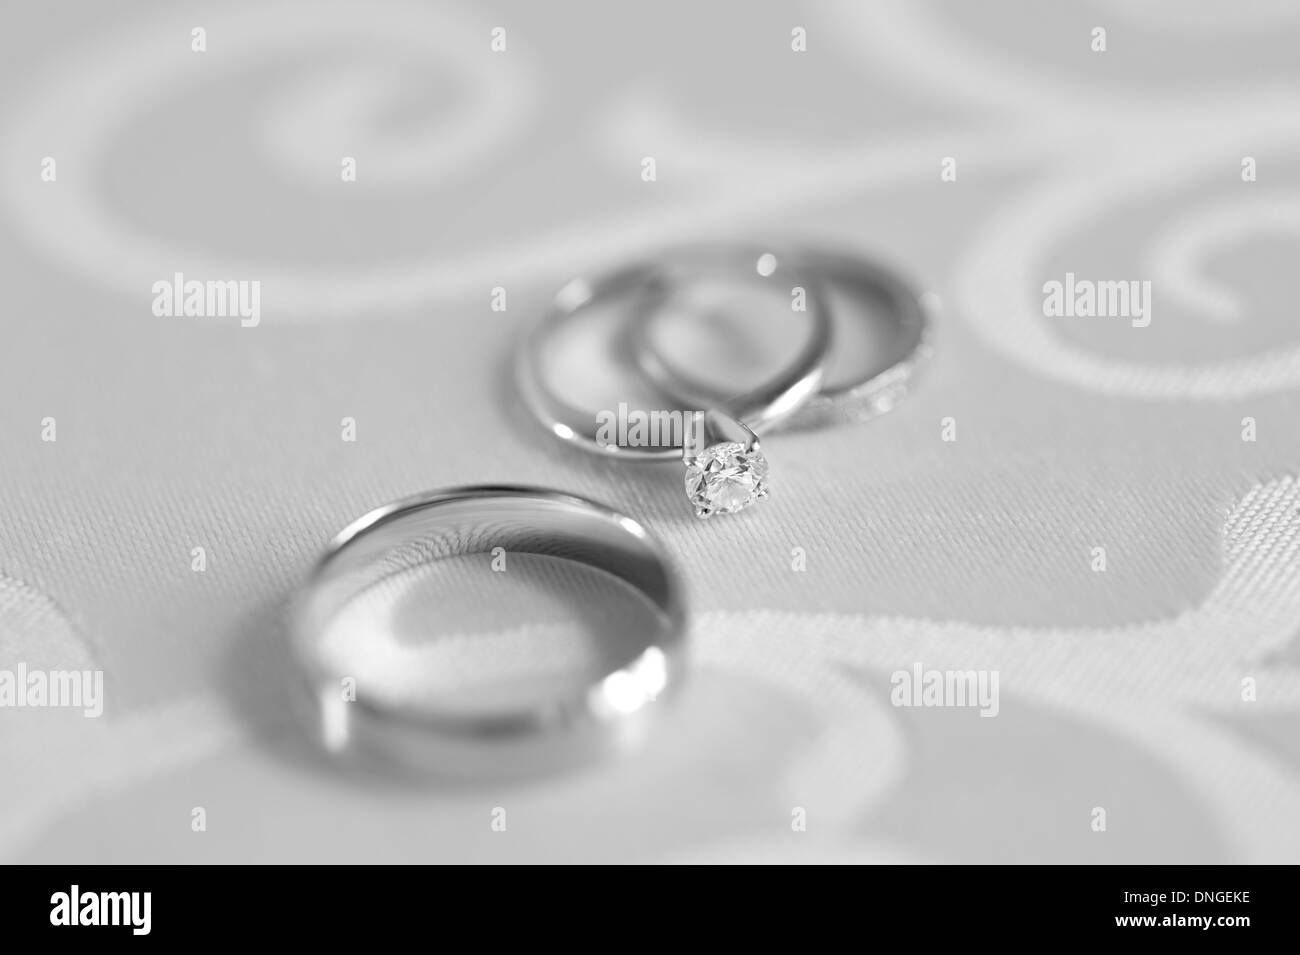 Trois anneaux : l'engagement avec diamond, et deux anneaux de mariage sur une table. Photographie en noir et blanc. Banque D'Images